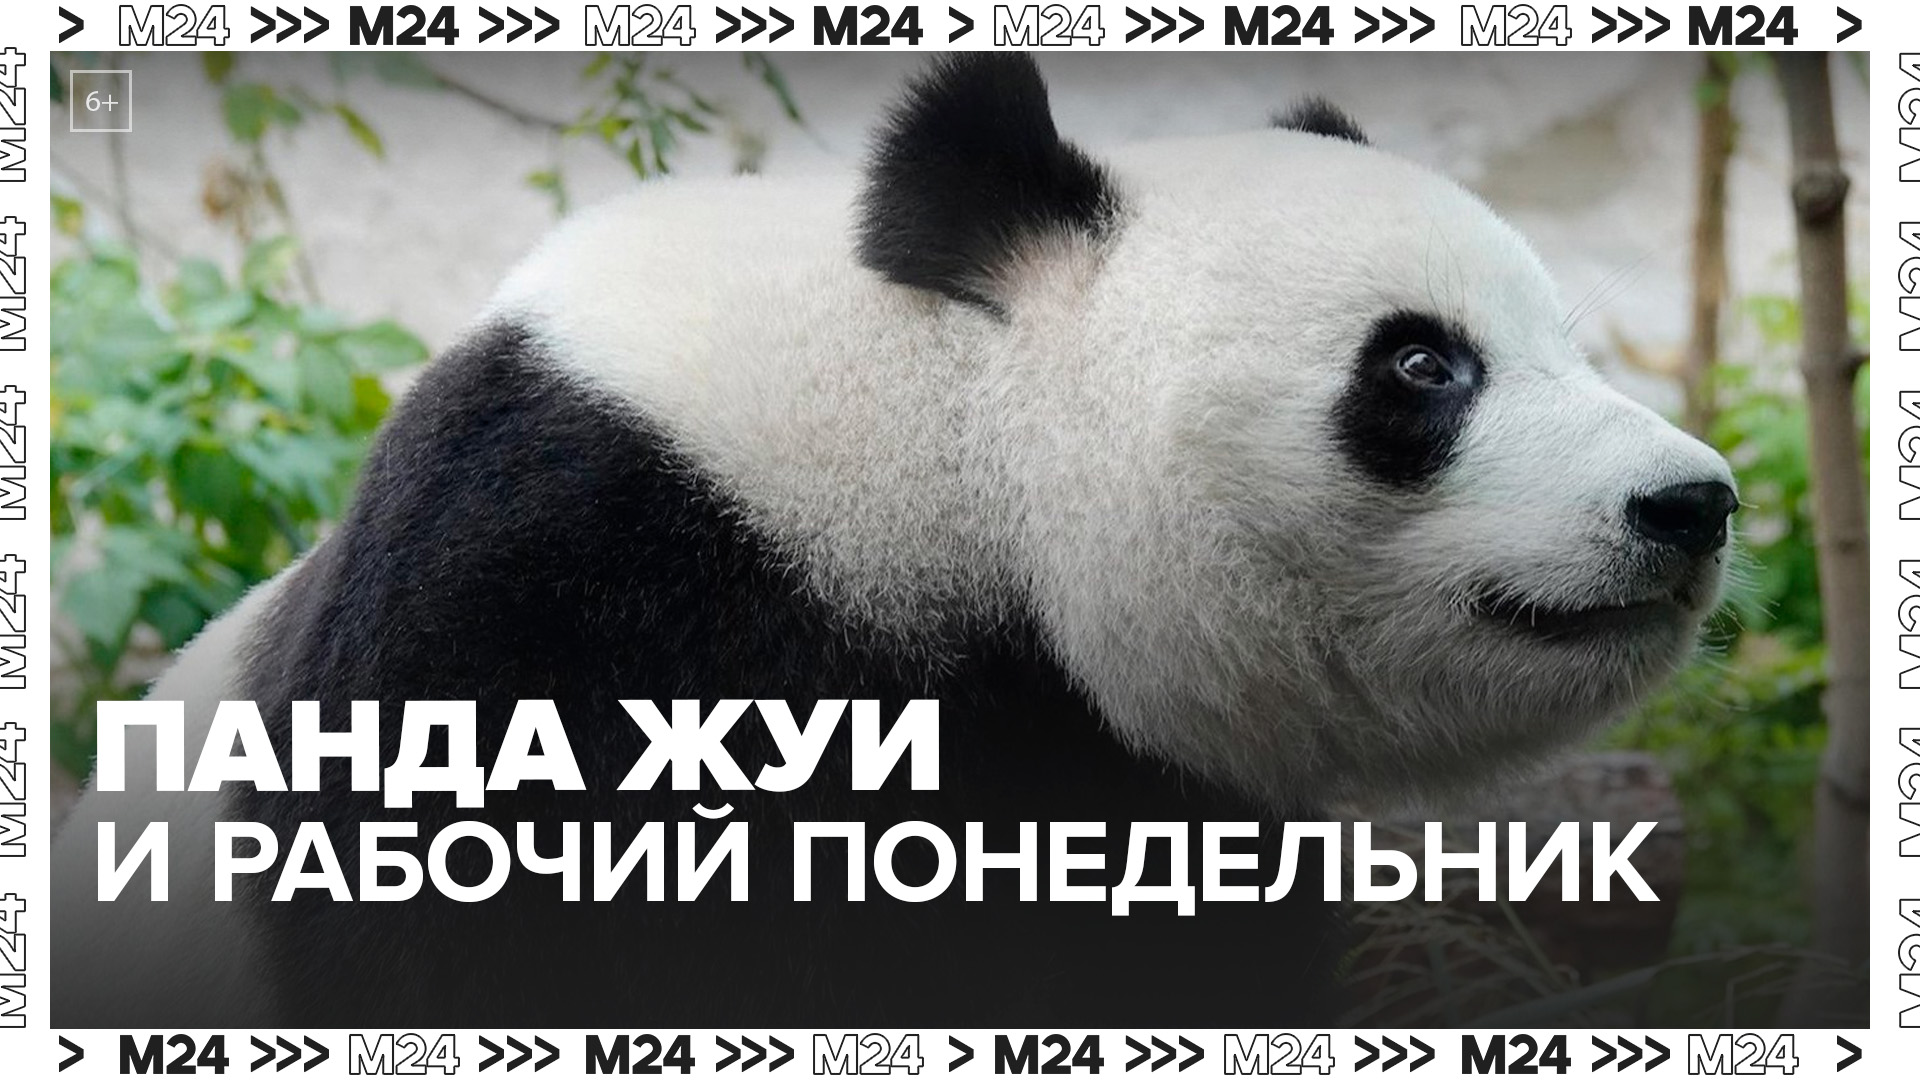 В Московском зоопарке панда Жуи продемонстрировал свое отношение к понедельнику - Москва 24